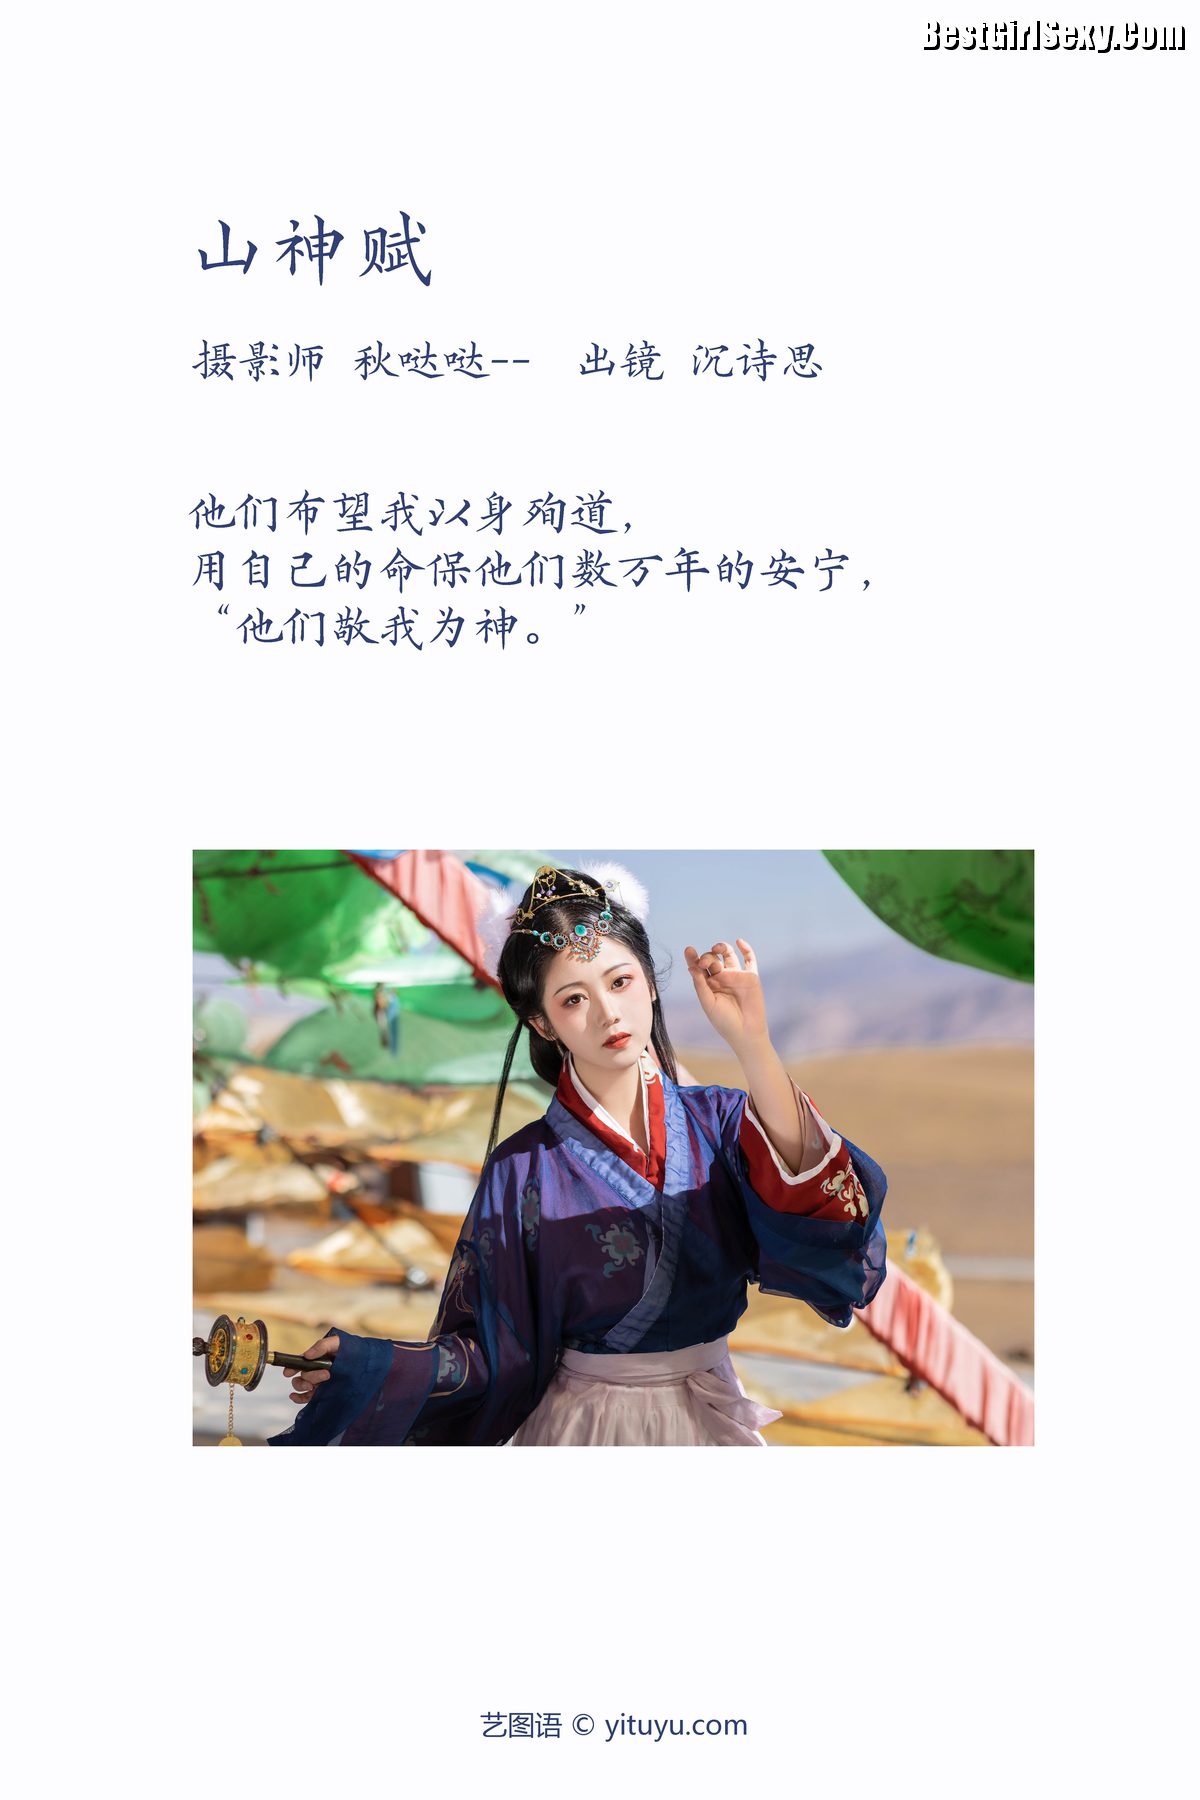 YiTuYu艺图语 Vol 3953 Shen Shi Si 0002 6130495781.jpg